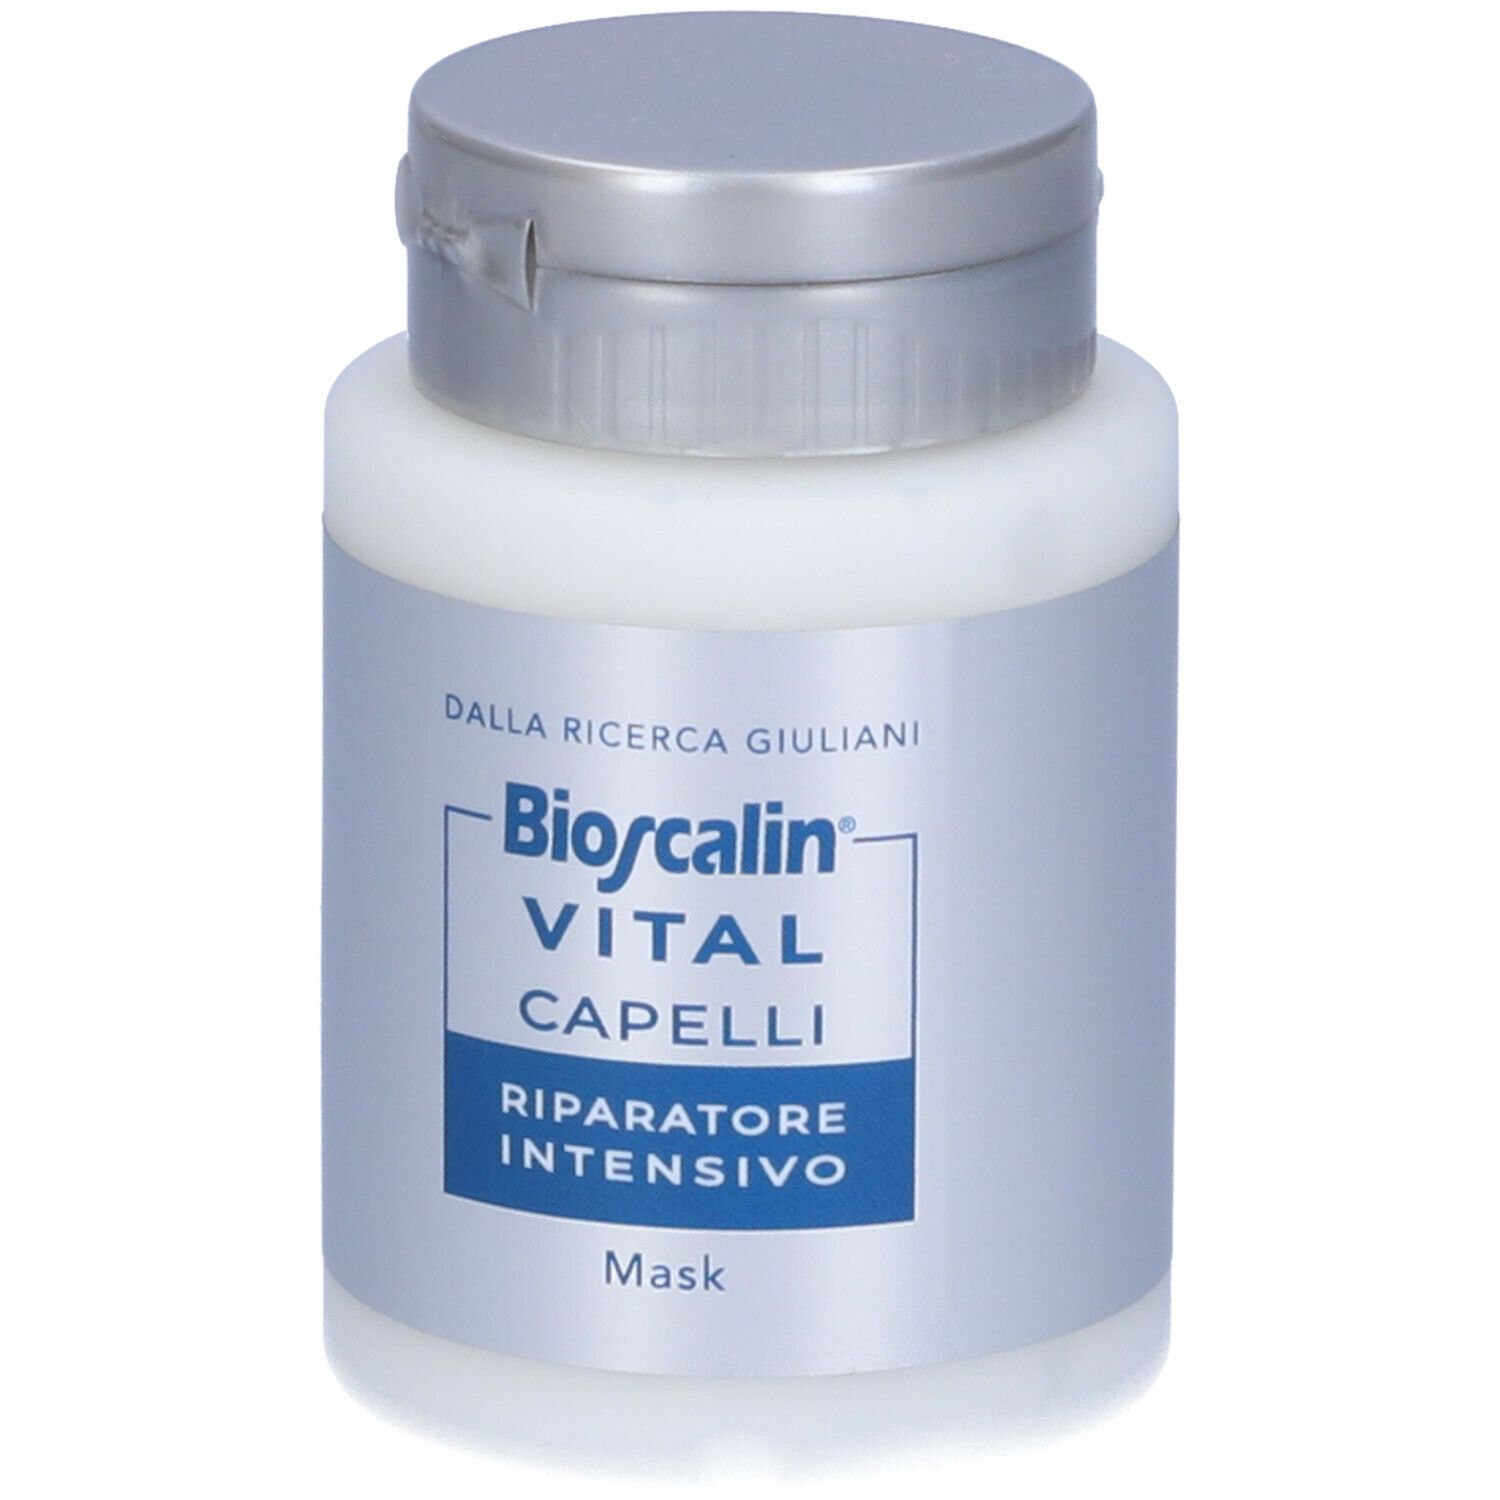 Bioscalin® VITAL Capelli Riparatore Intensivo